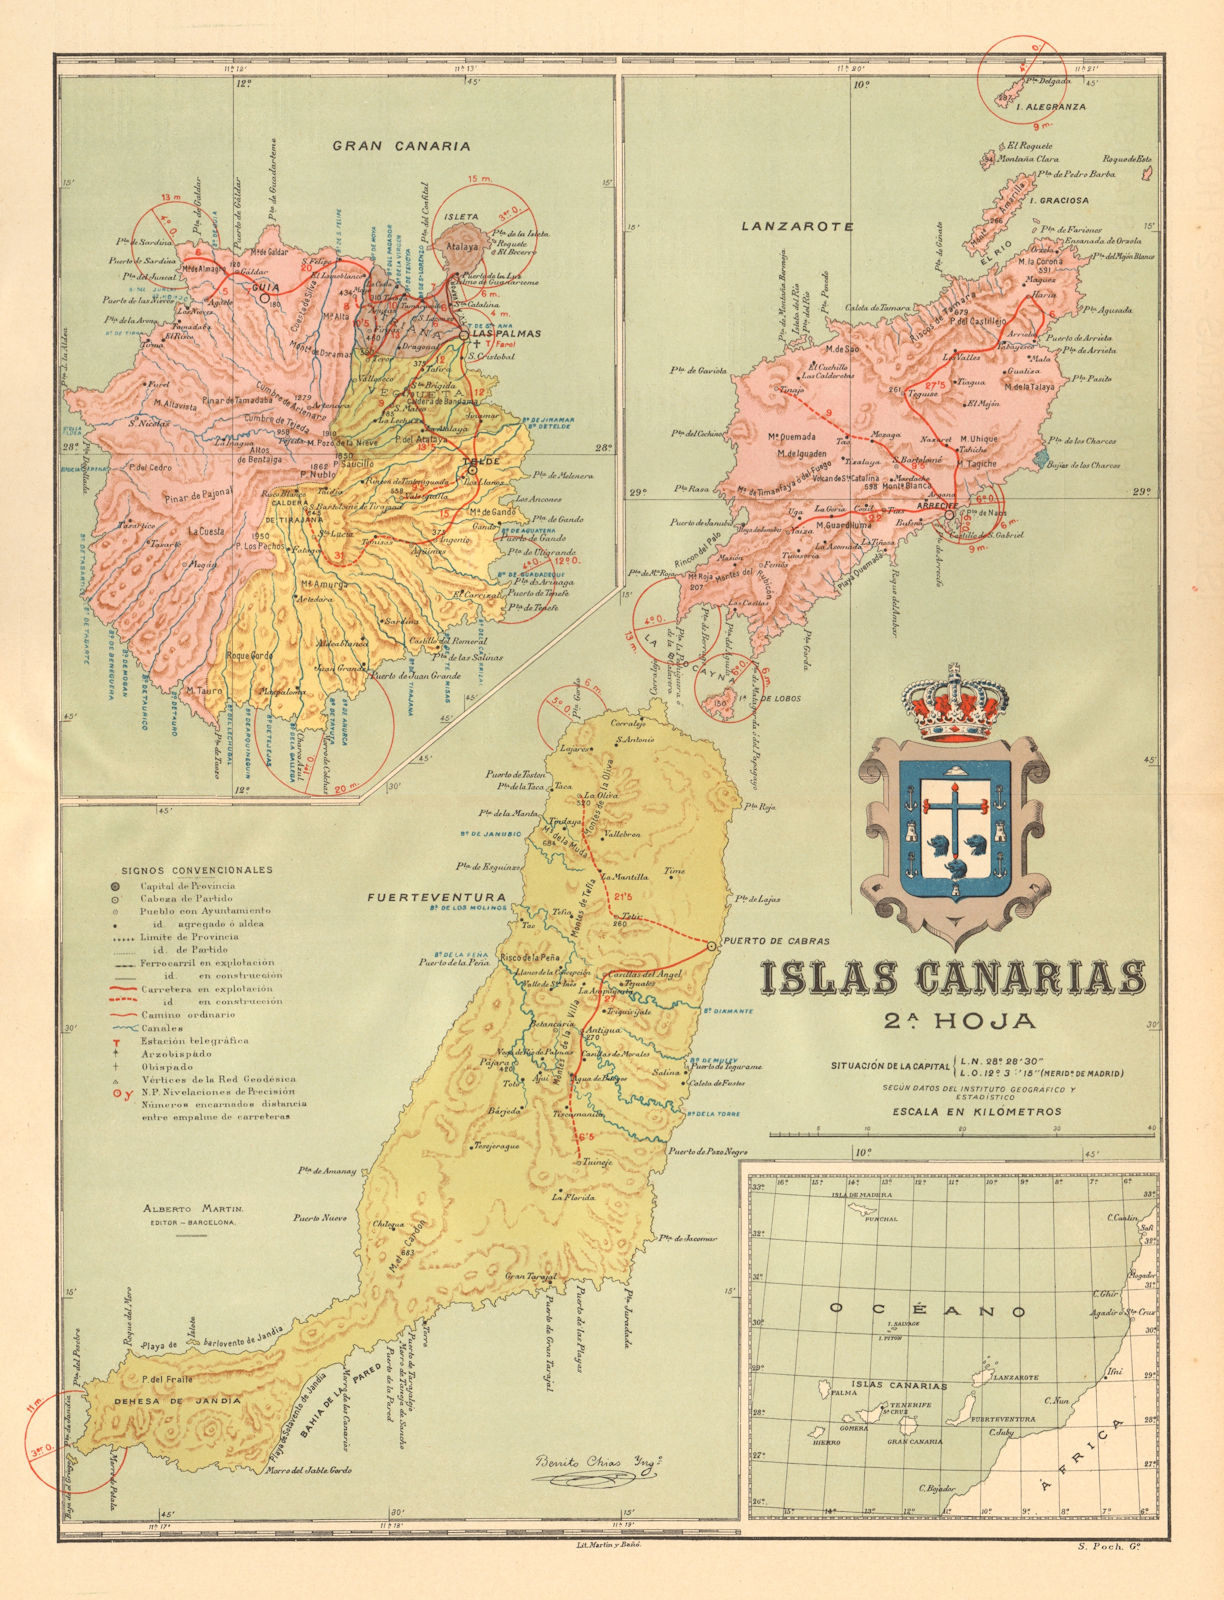 ISLAS CANARIAS Gran Canaria Fuerteventura Lanzarote. Canary Islands c1911 map